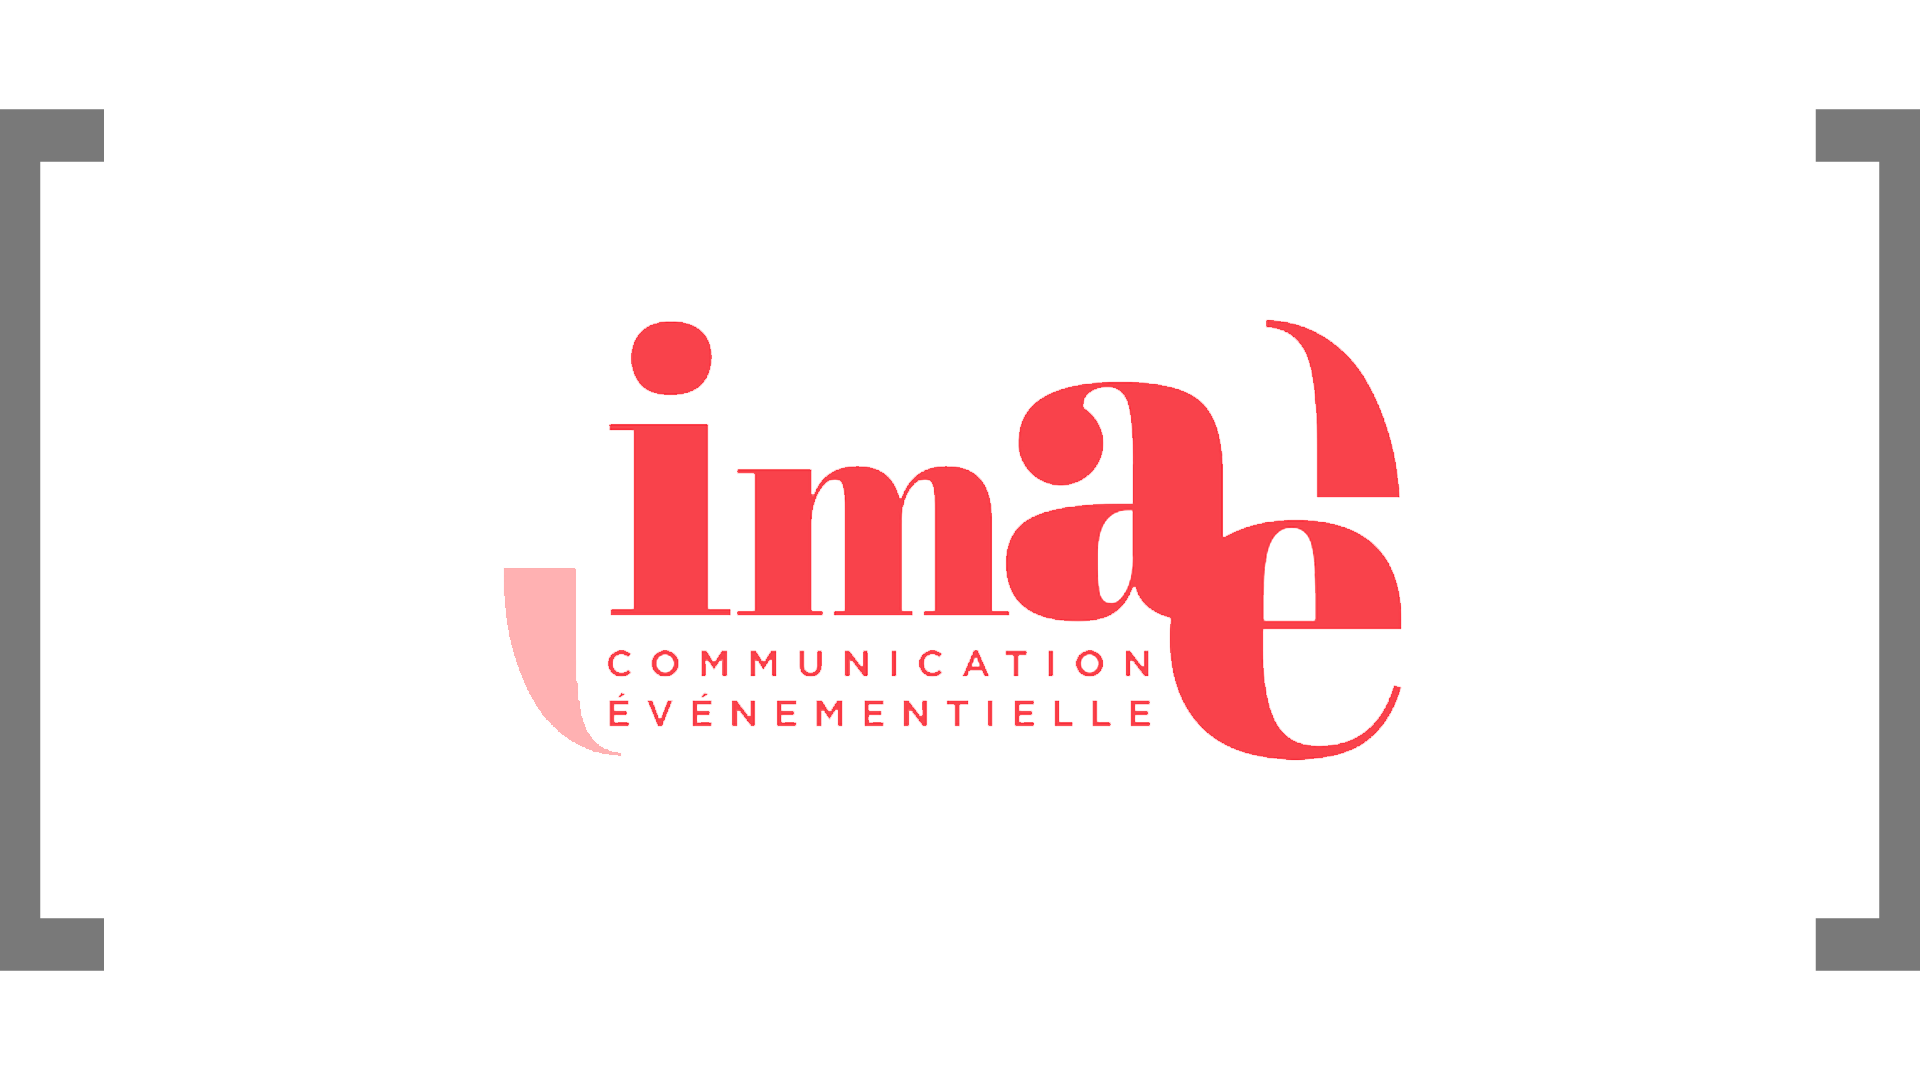 agence Imaé - communication événementielle